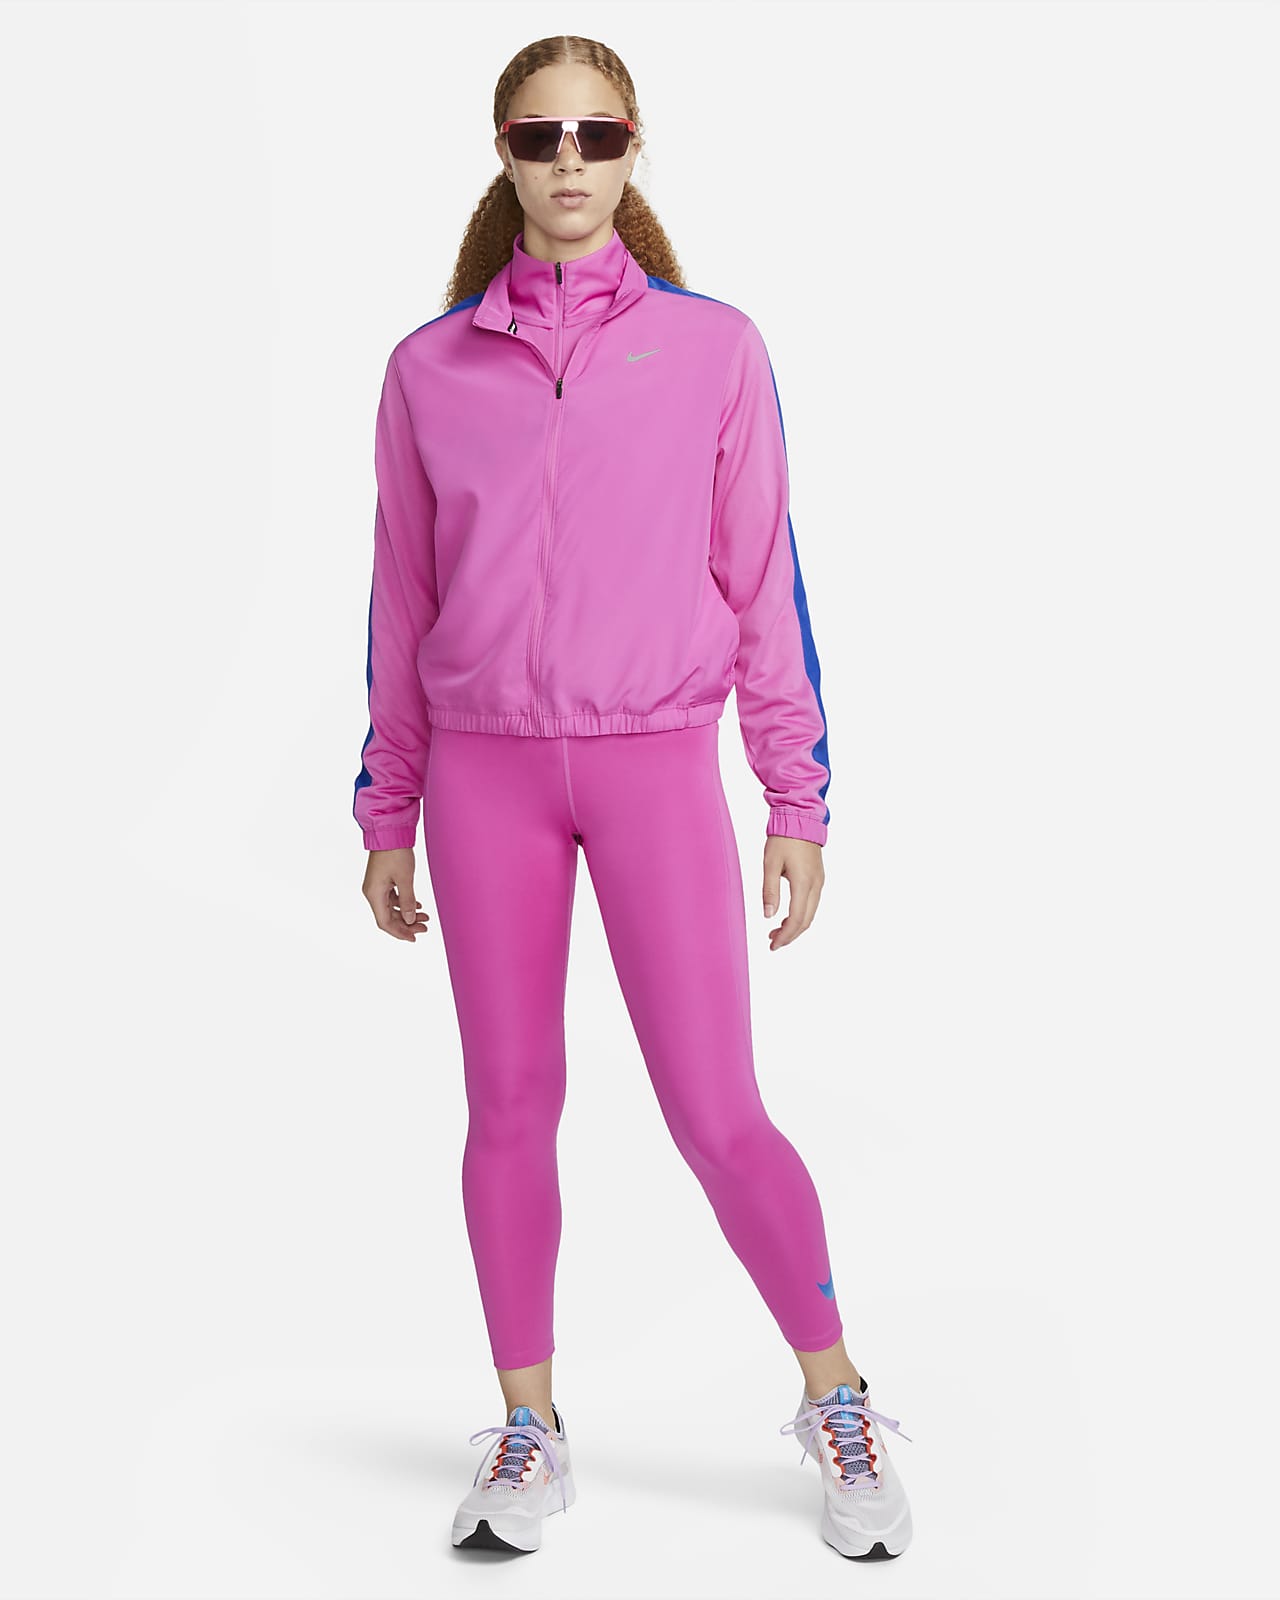 Cinque leggings rosa Nike per ogni allenamento . Nike IT